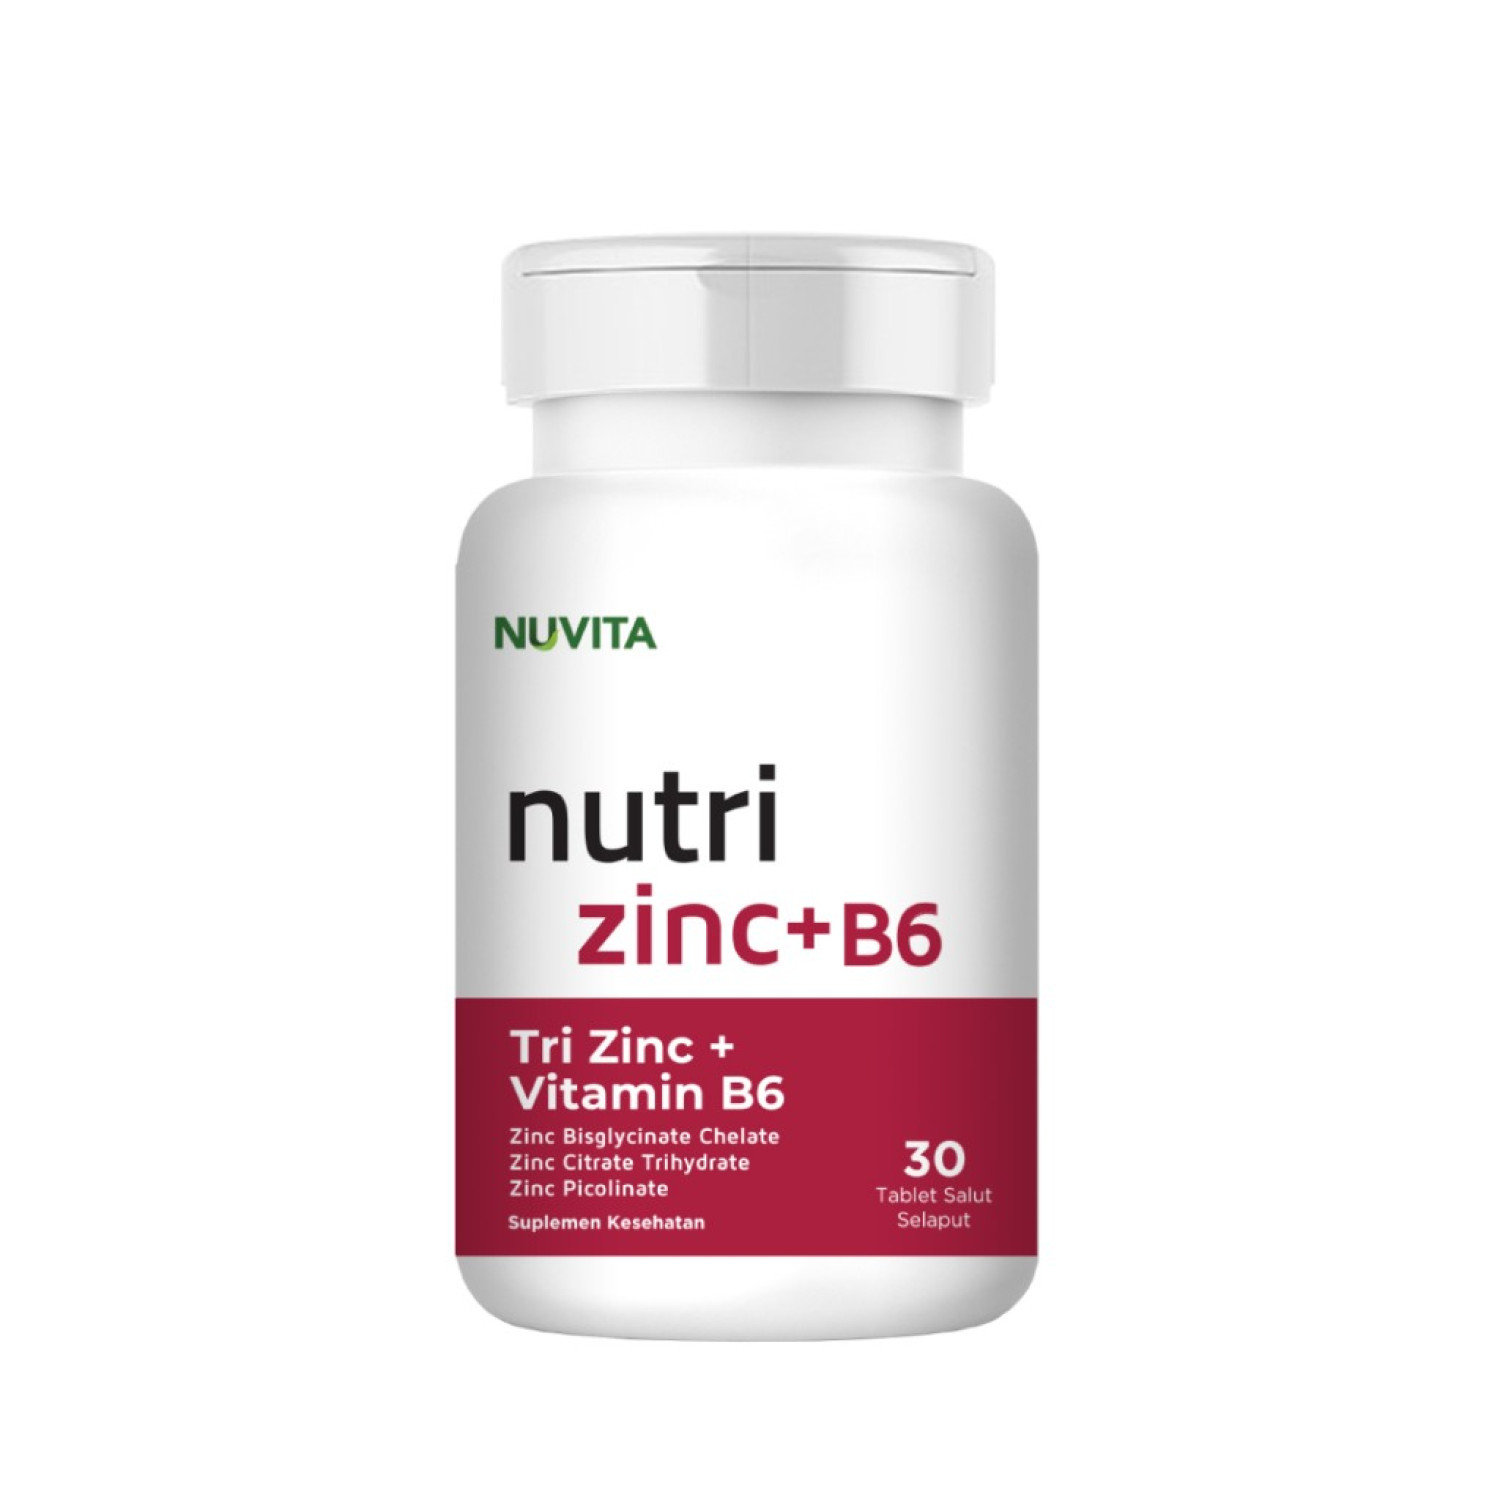 nuvita-tri-zinc-vitamin-b6-30-exp-date-4-24-654b5c2515ca9.jpeg